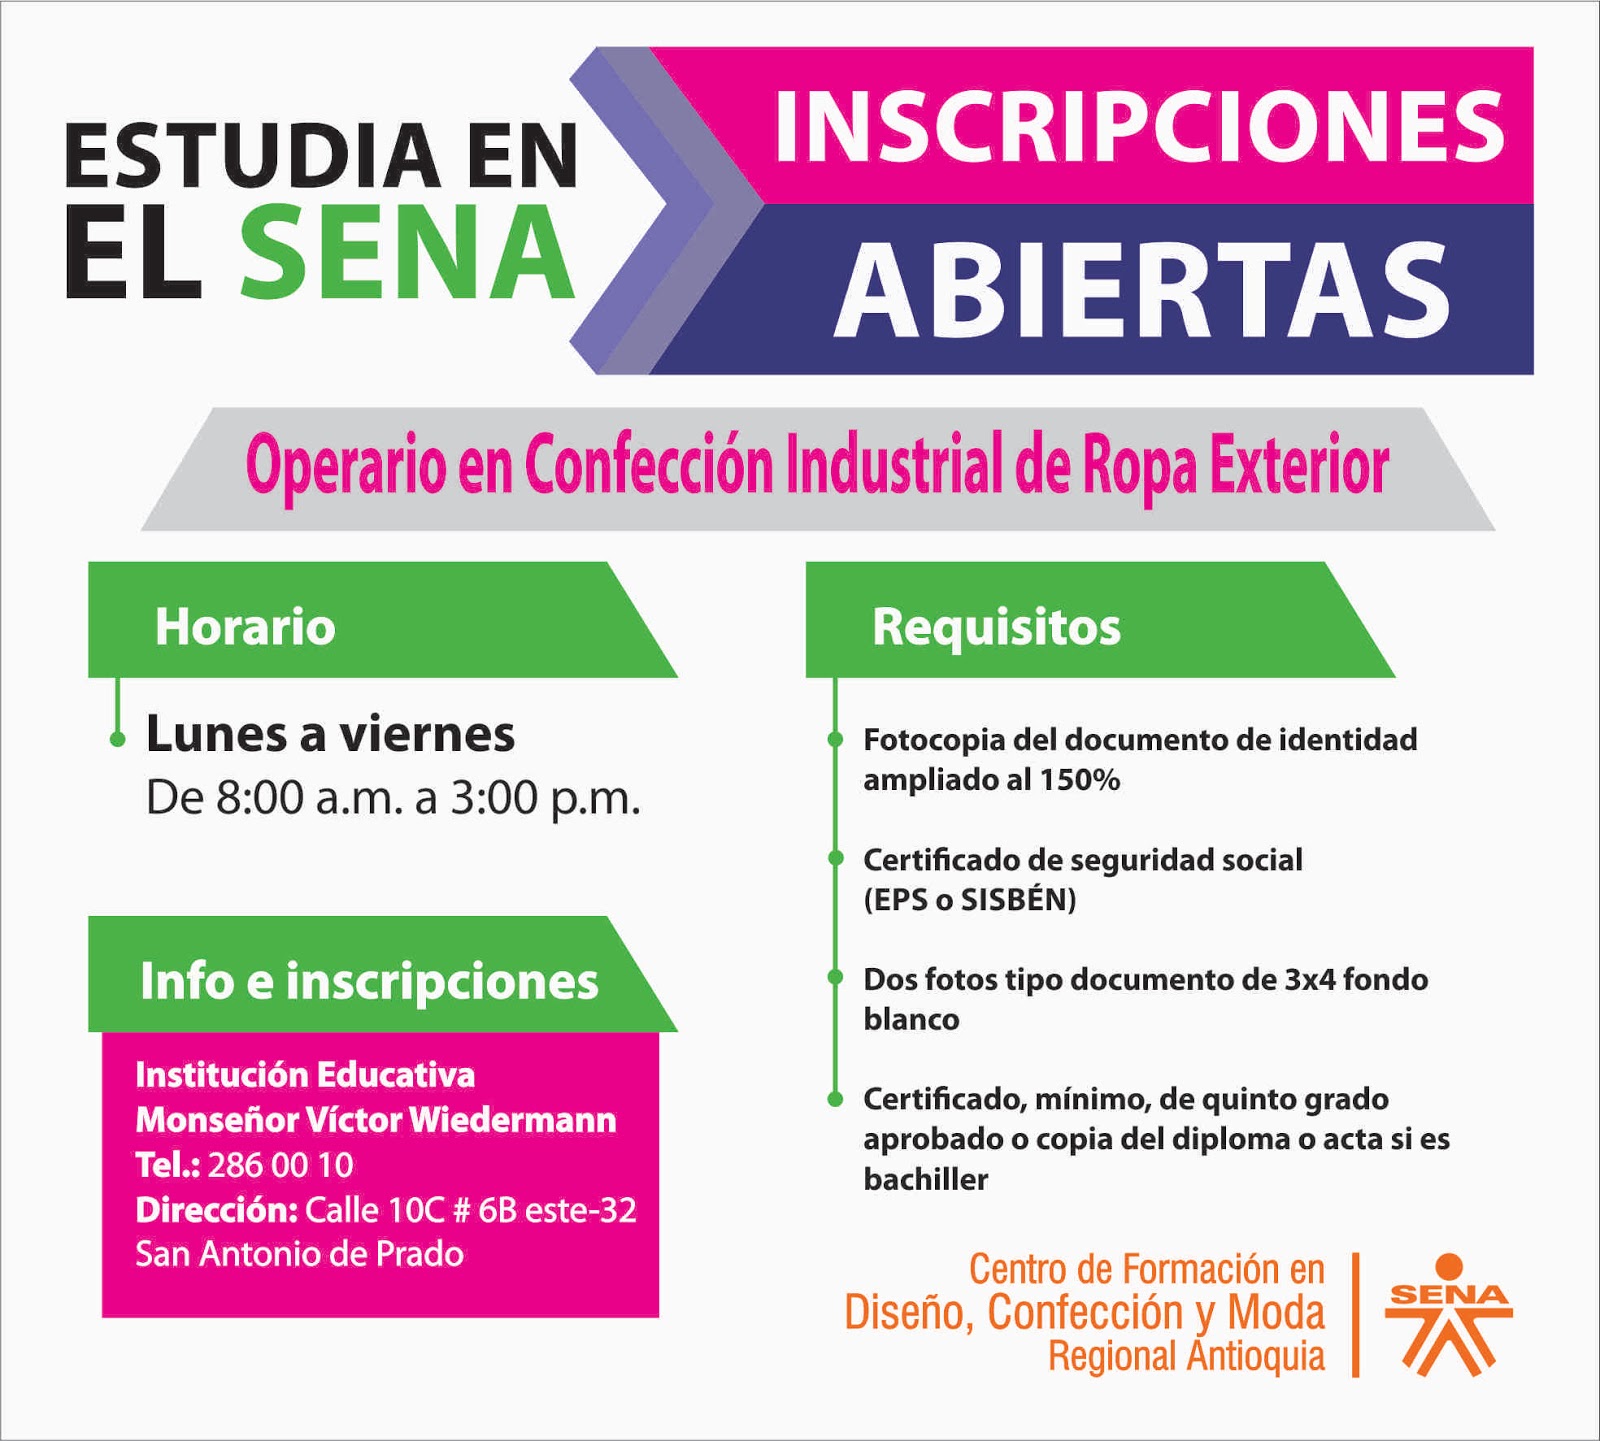 Centro de Formación en Diseño, Confección y Moda - SENA Regional Antioquia:  Inscripciones abiertas para Operario en Confección Industrial de Ropa  Exterior